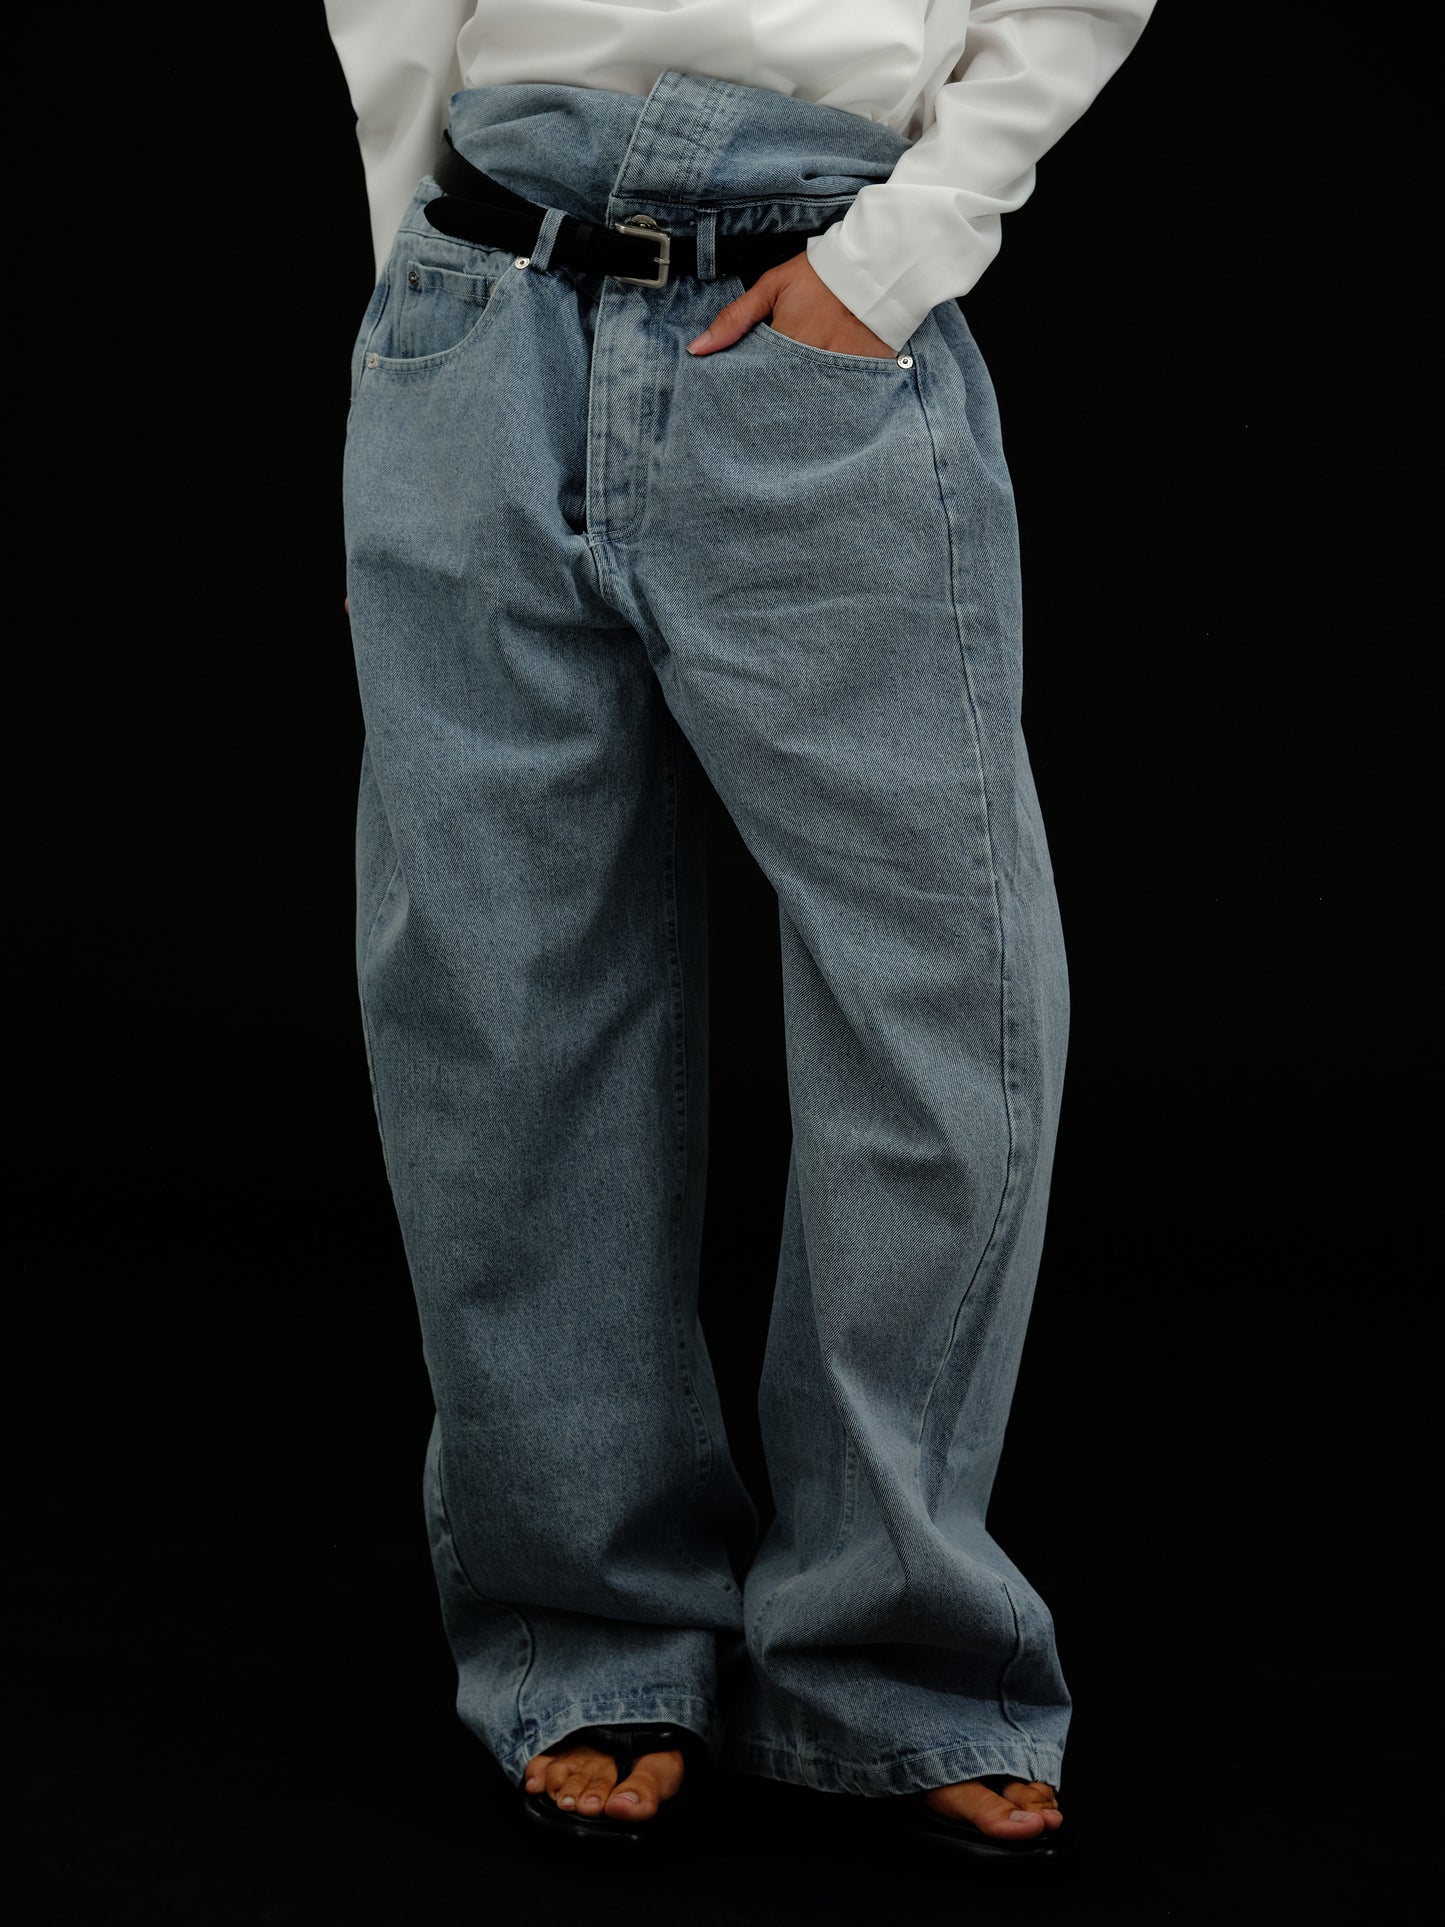 Undone Jeans - Calça com faixa lateral está BOMBANDO por aqui! Já garantiu  a sua? Nas melhores lojas encontre ➡️ Undone Jeans! #fashionista #undone # jeans #modafeminina #moda #denim #fashion #atacado #lookstyle